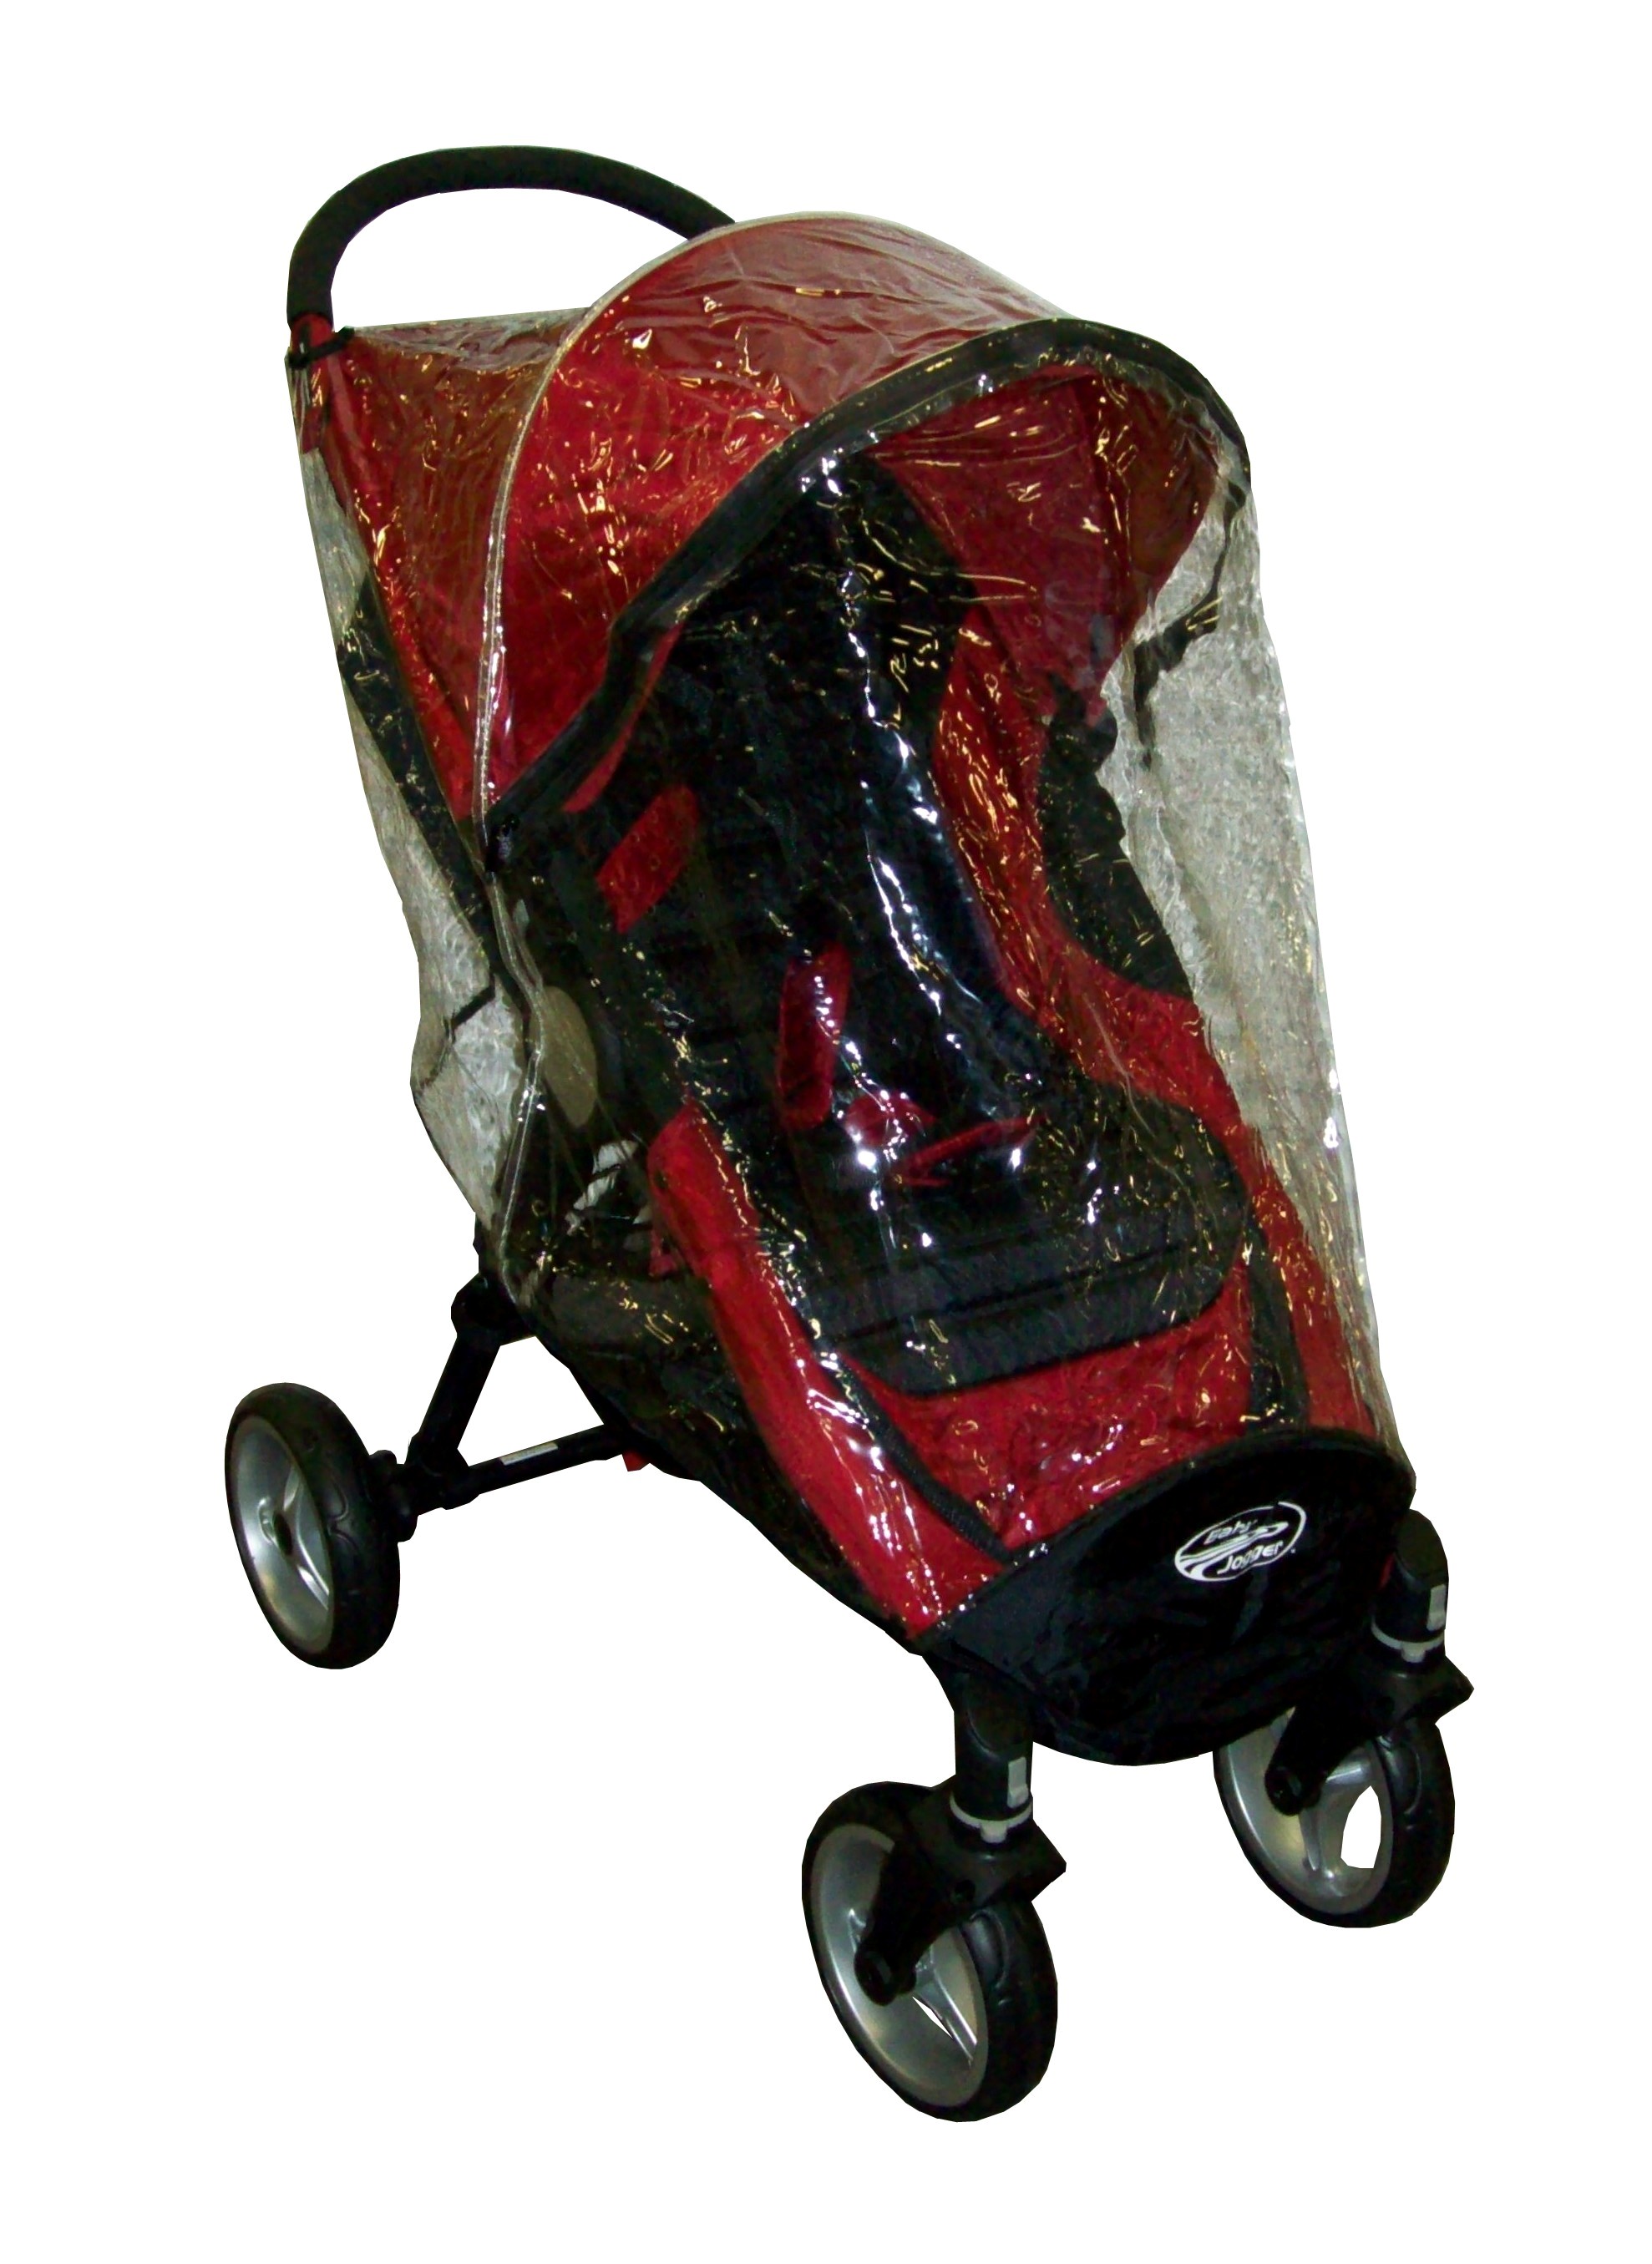 дождевик на детскую коляску, дождевик на Baby Jogger City Mini 4, дождевик на коляску Бейби Джоггер Сити Мини 4, дождевик на четырехколесную коляску, дождевик на коляску купить